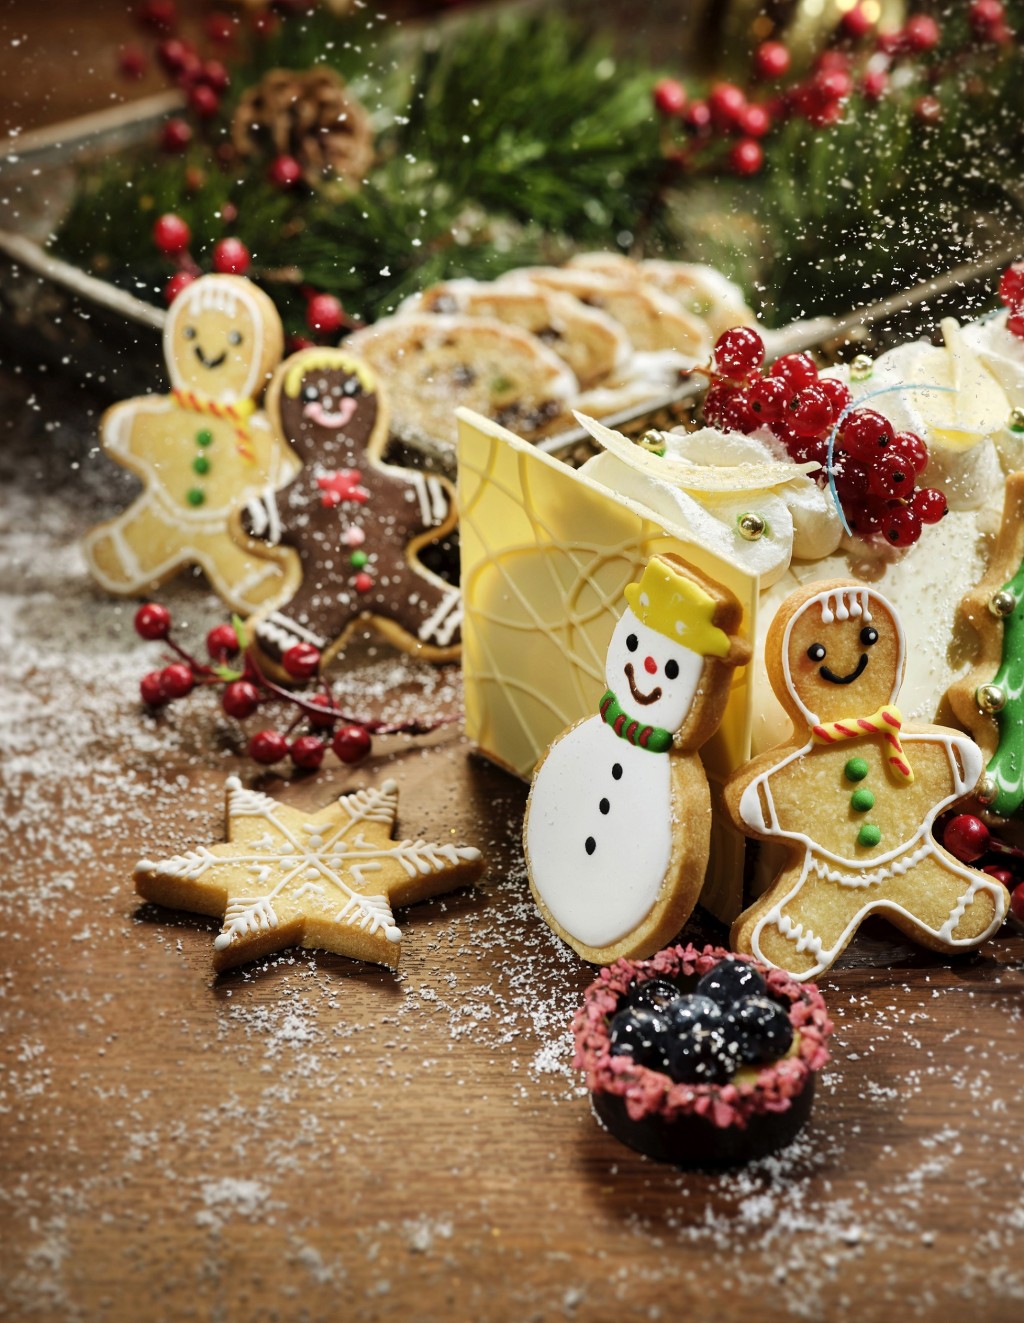 平安夜及圣诞节当天更特别增添果子面包、树头蛋糕等经典圣诞甜品